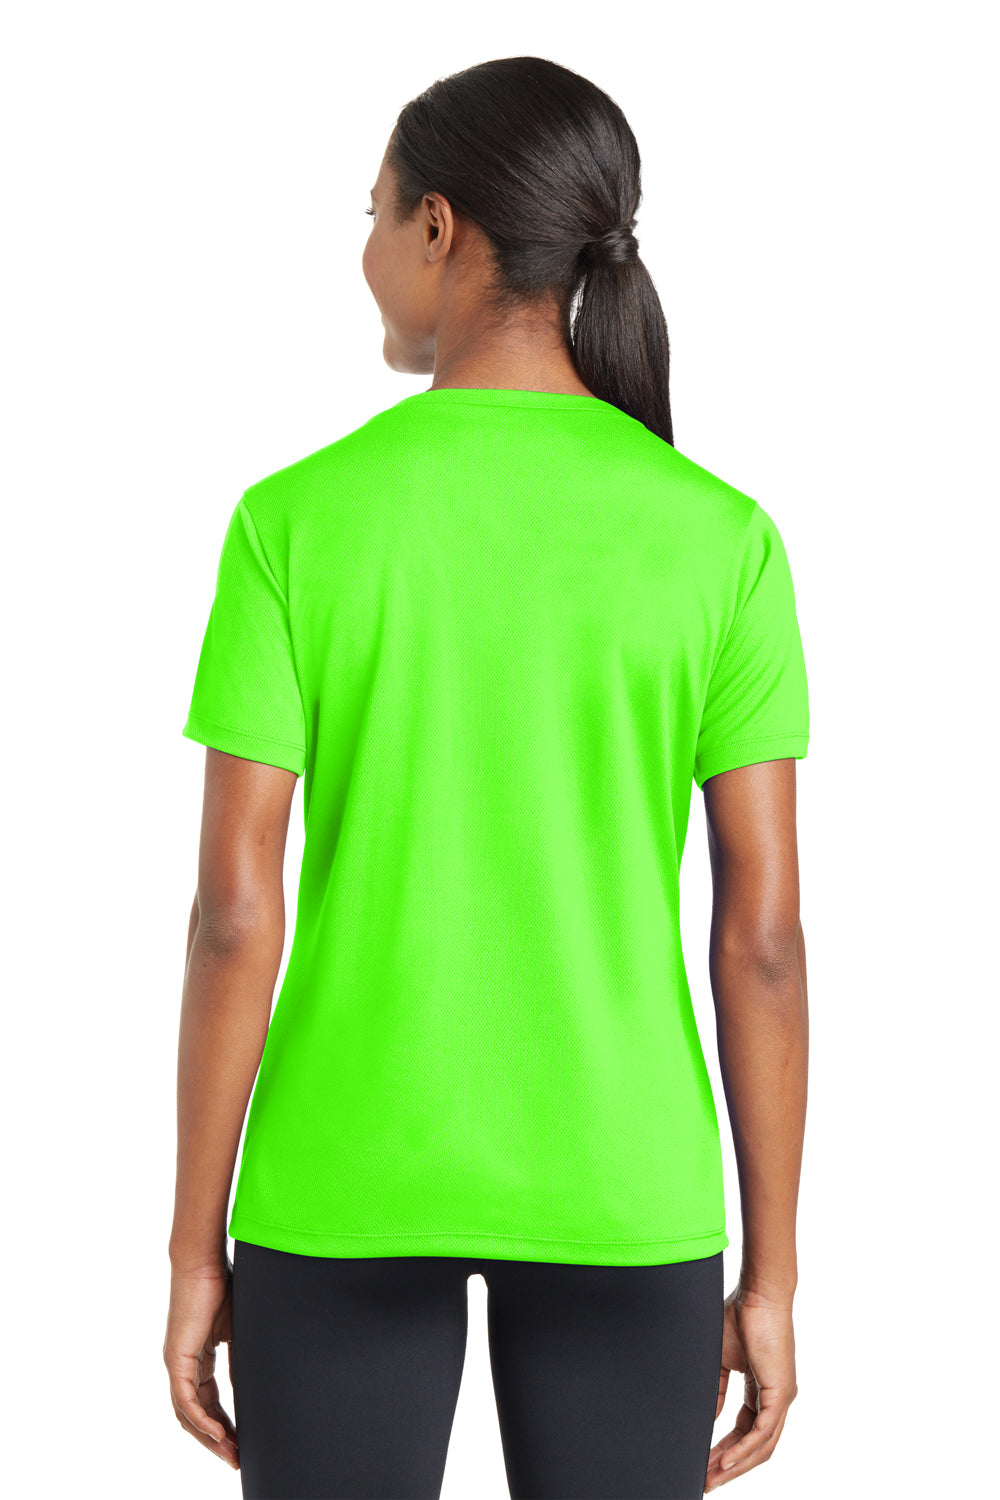 T-Shirt — RacerMesh V-Neck Sport-Tek Wicking Neon Green LST340 Short Sleeve Womens Moisture